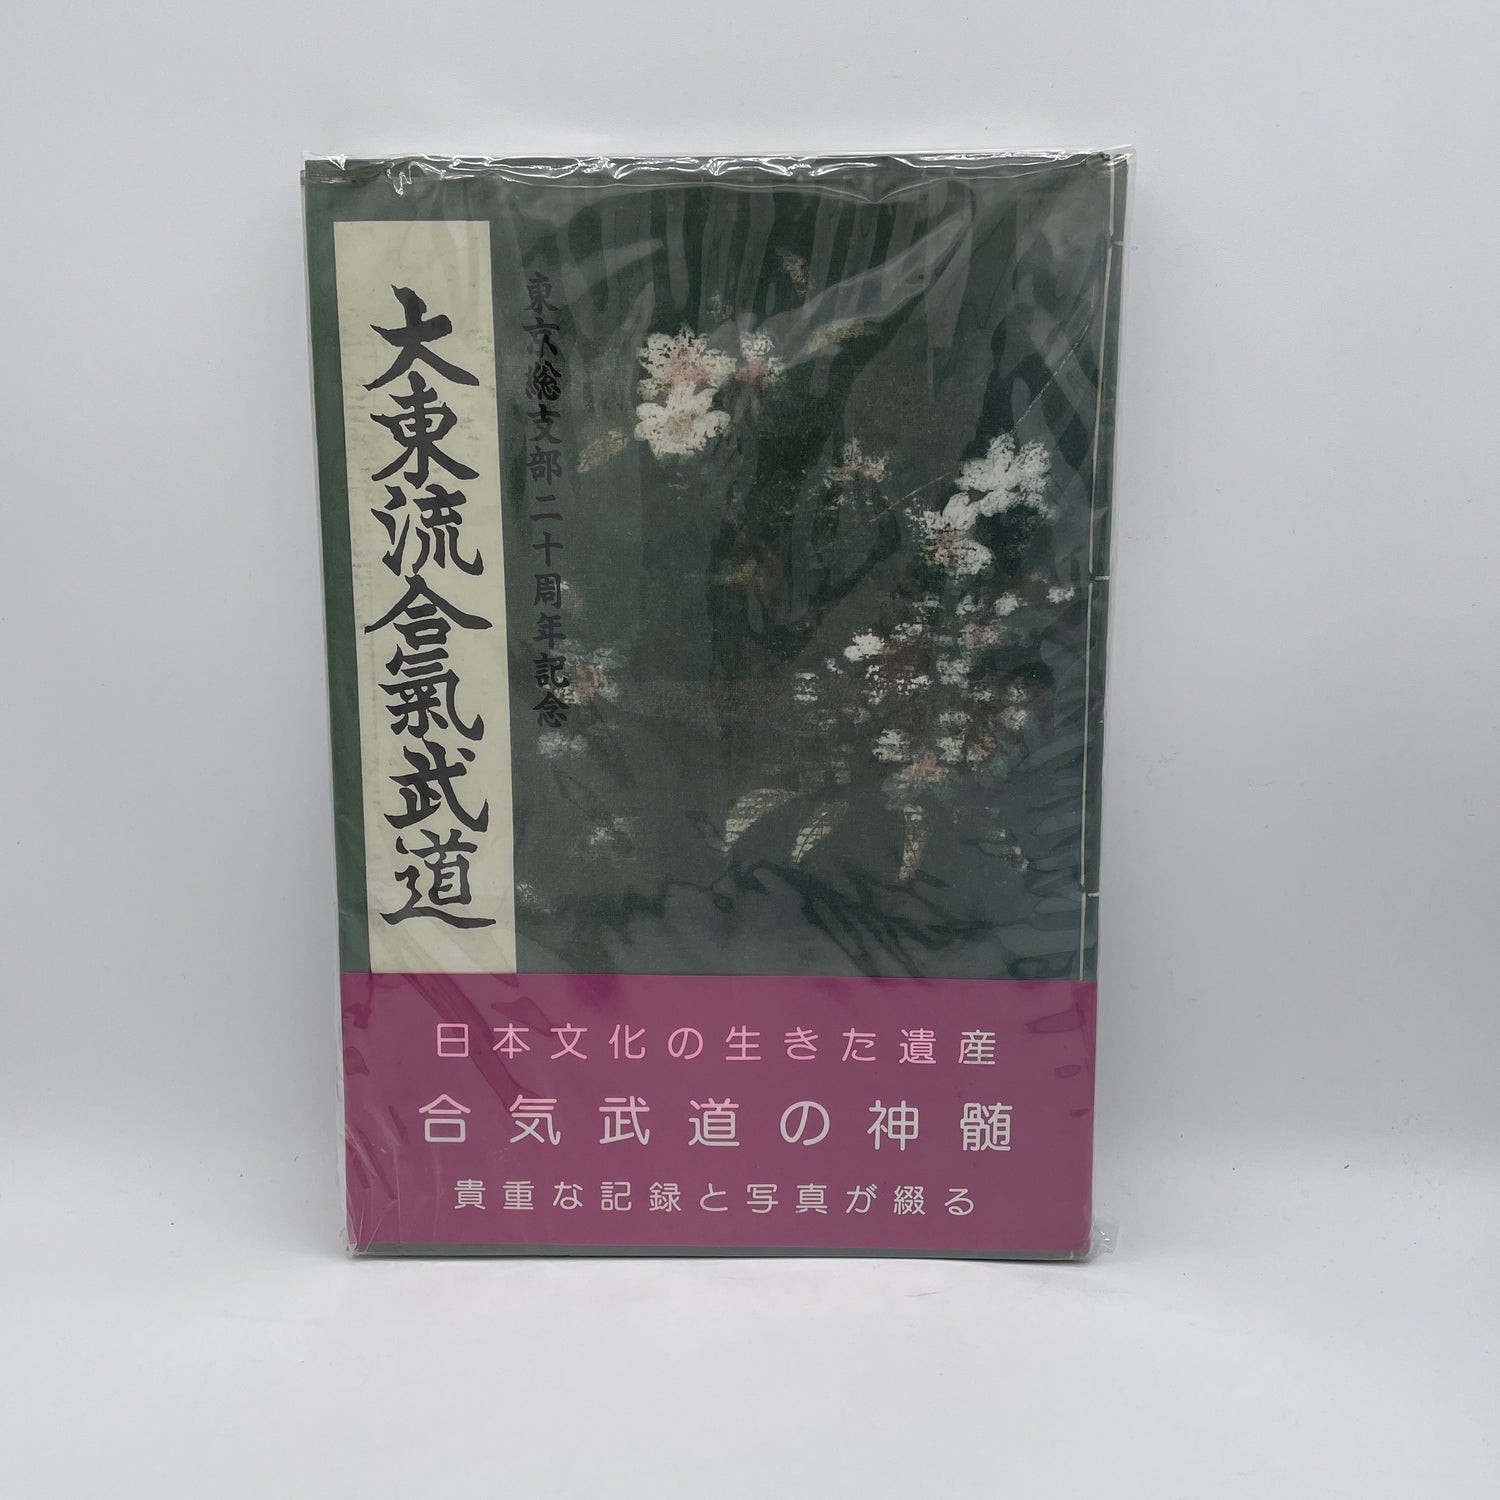 Libro del 20º aniversario de la sucursal de Tokio de Daito Ryu Aikijujutsu (seminuevo)